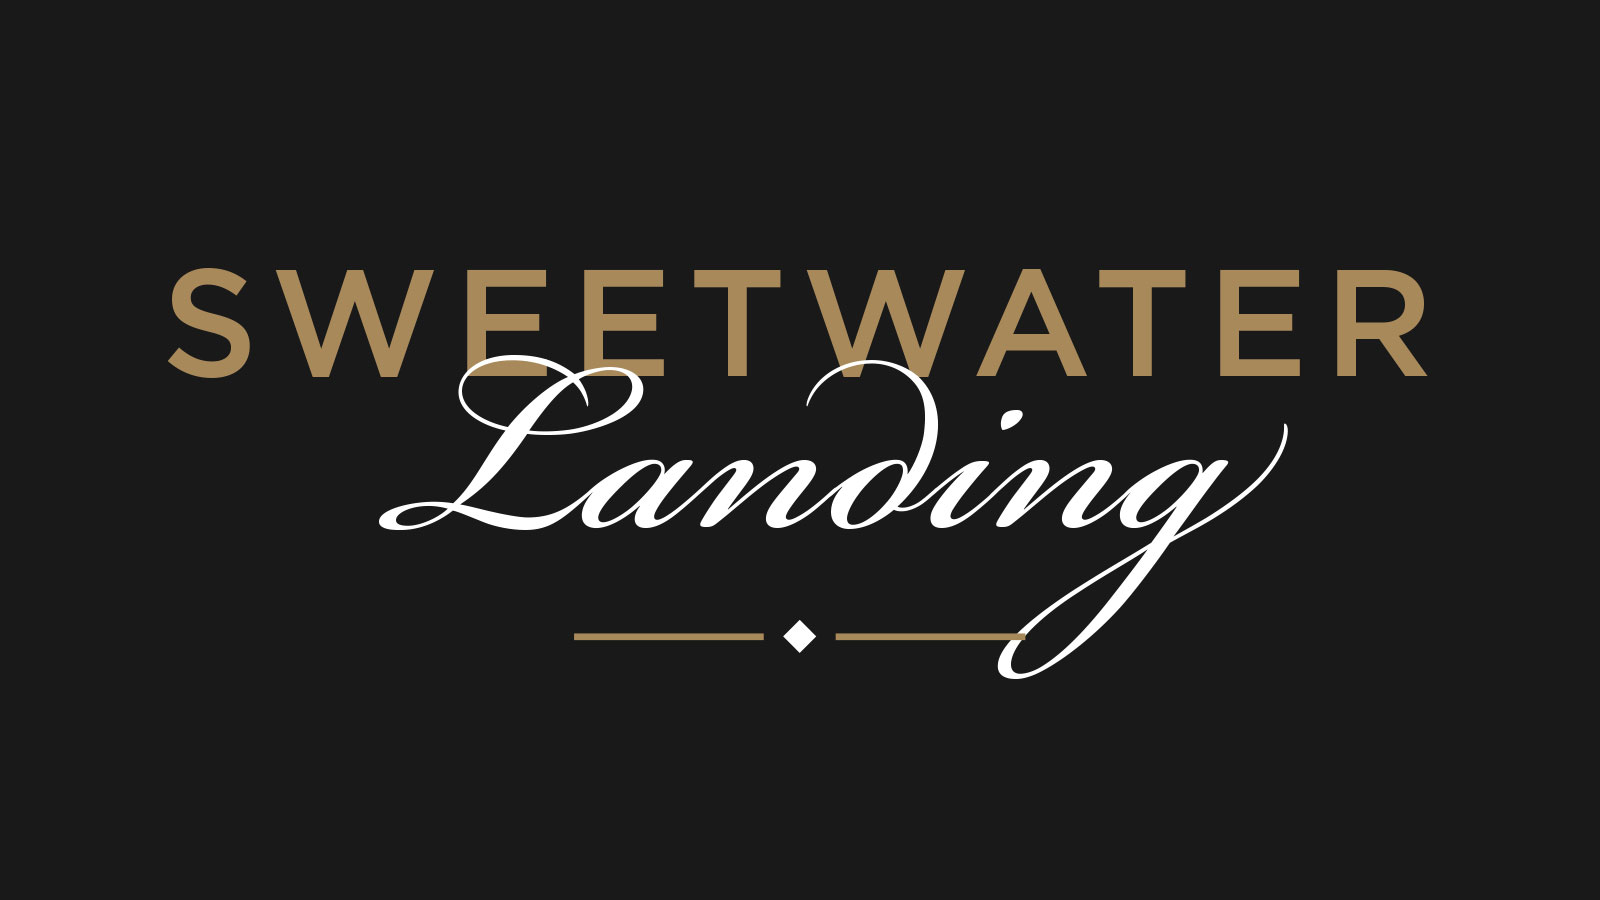 Sweetwater Landing